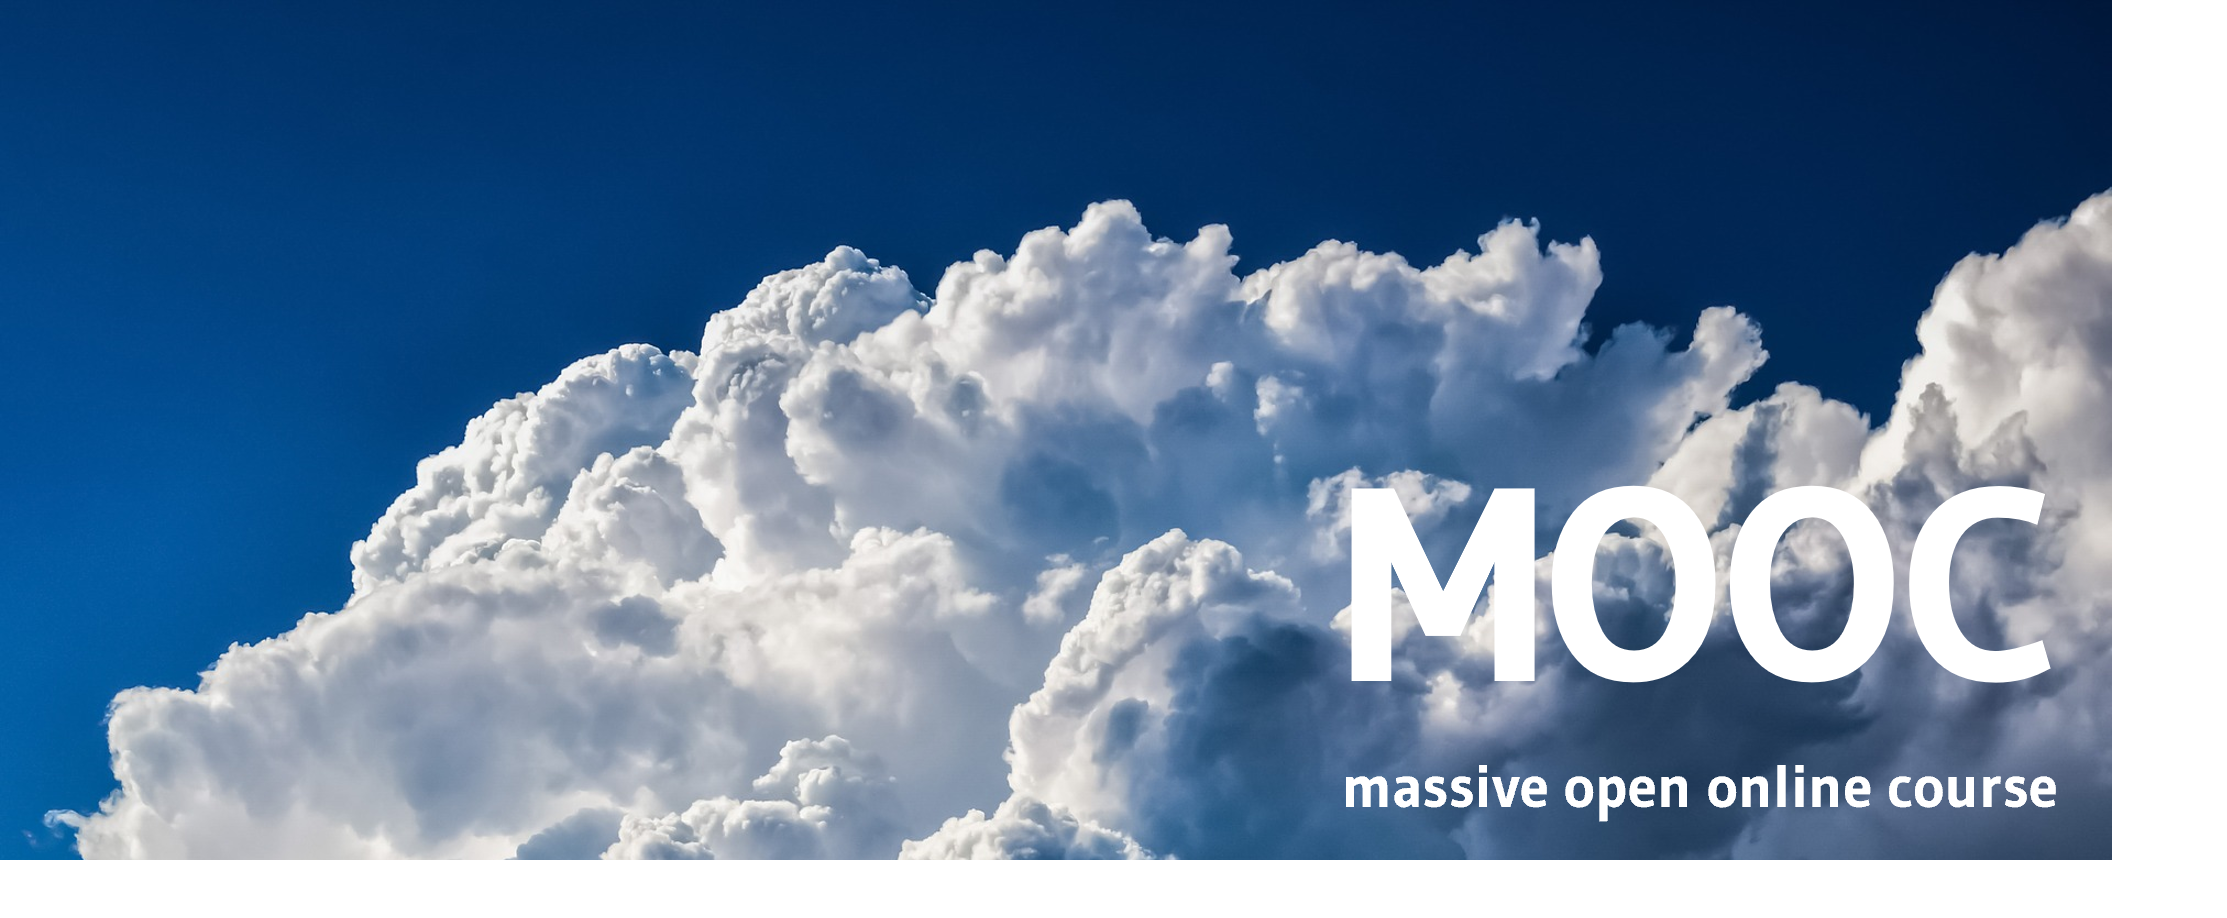 Bild zeigt Wolken. Darauf der Schriftzug: MOOC massive open online course